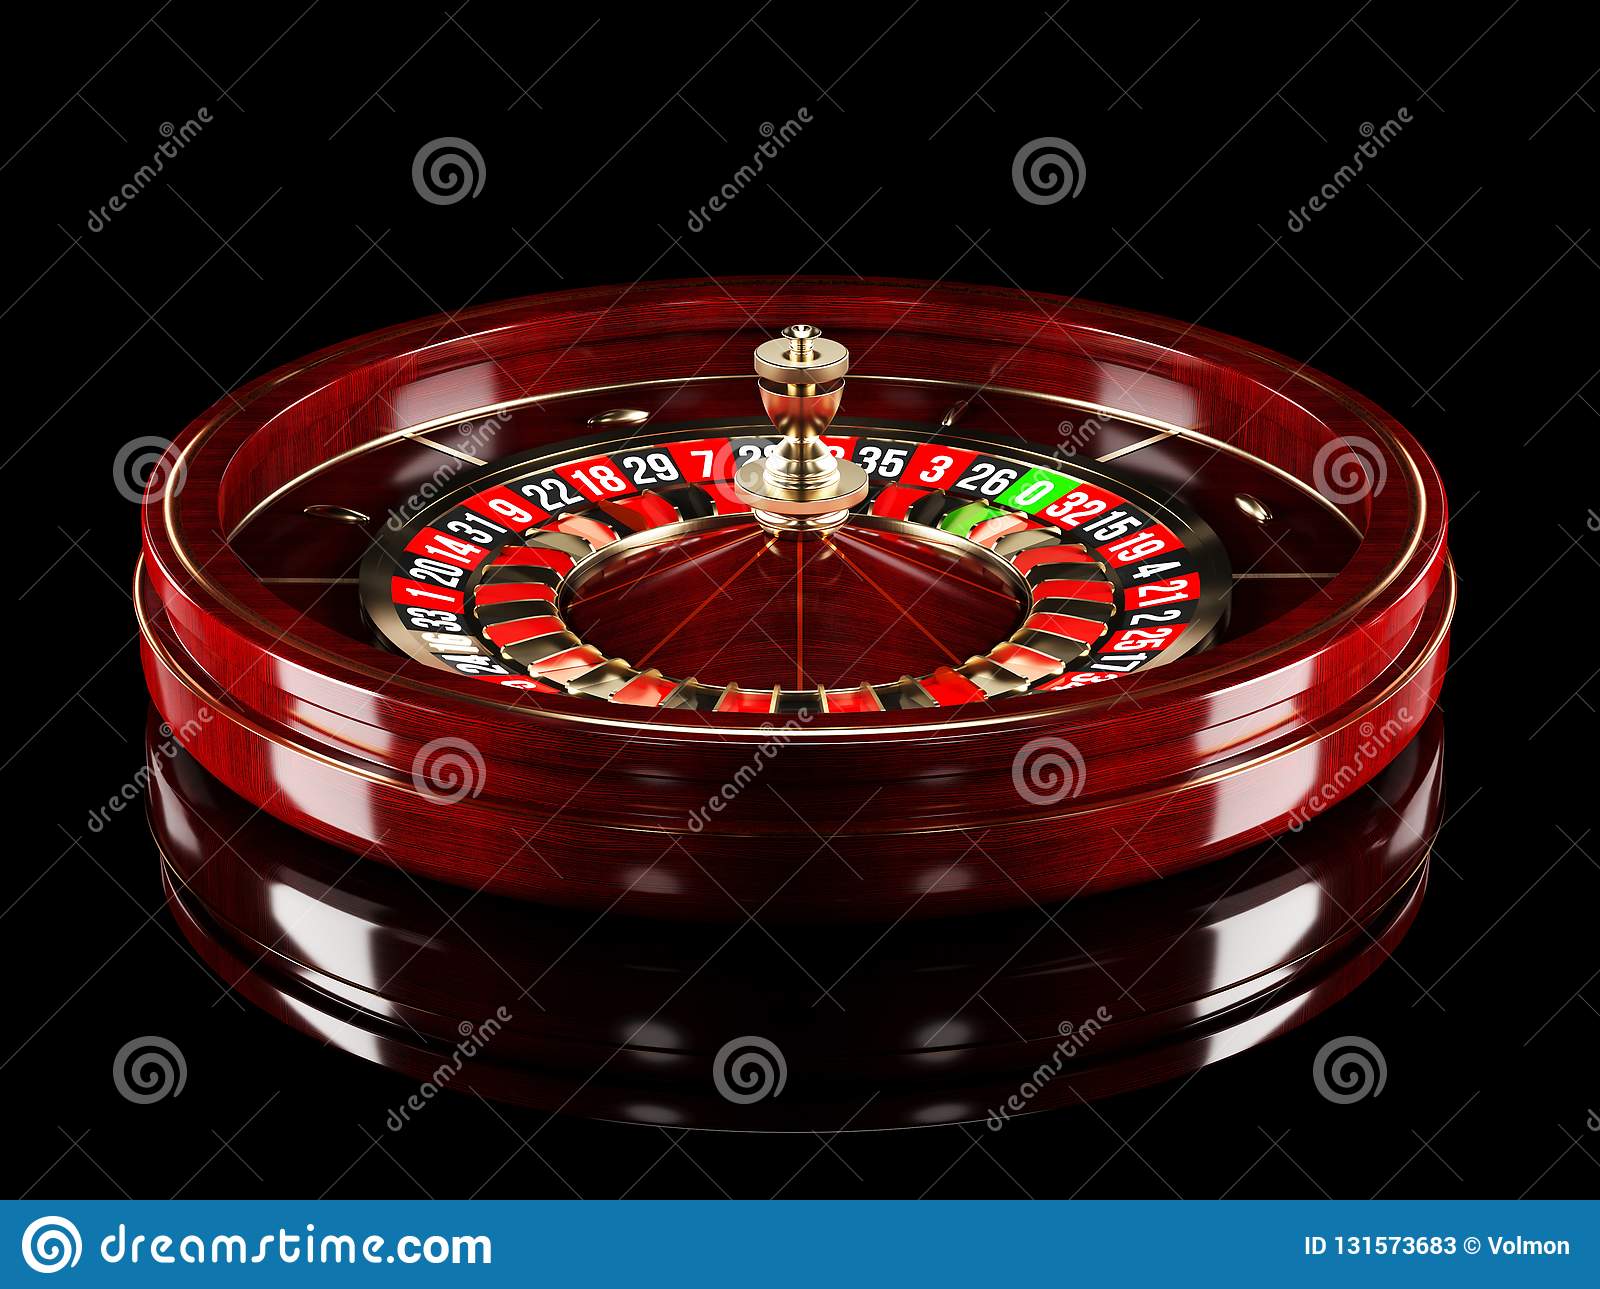 Poker slots online